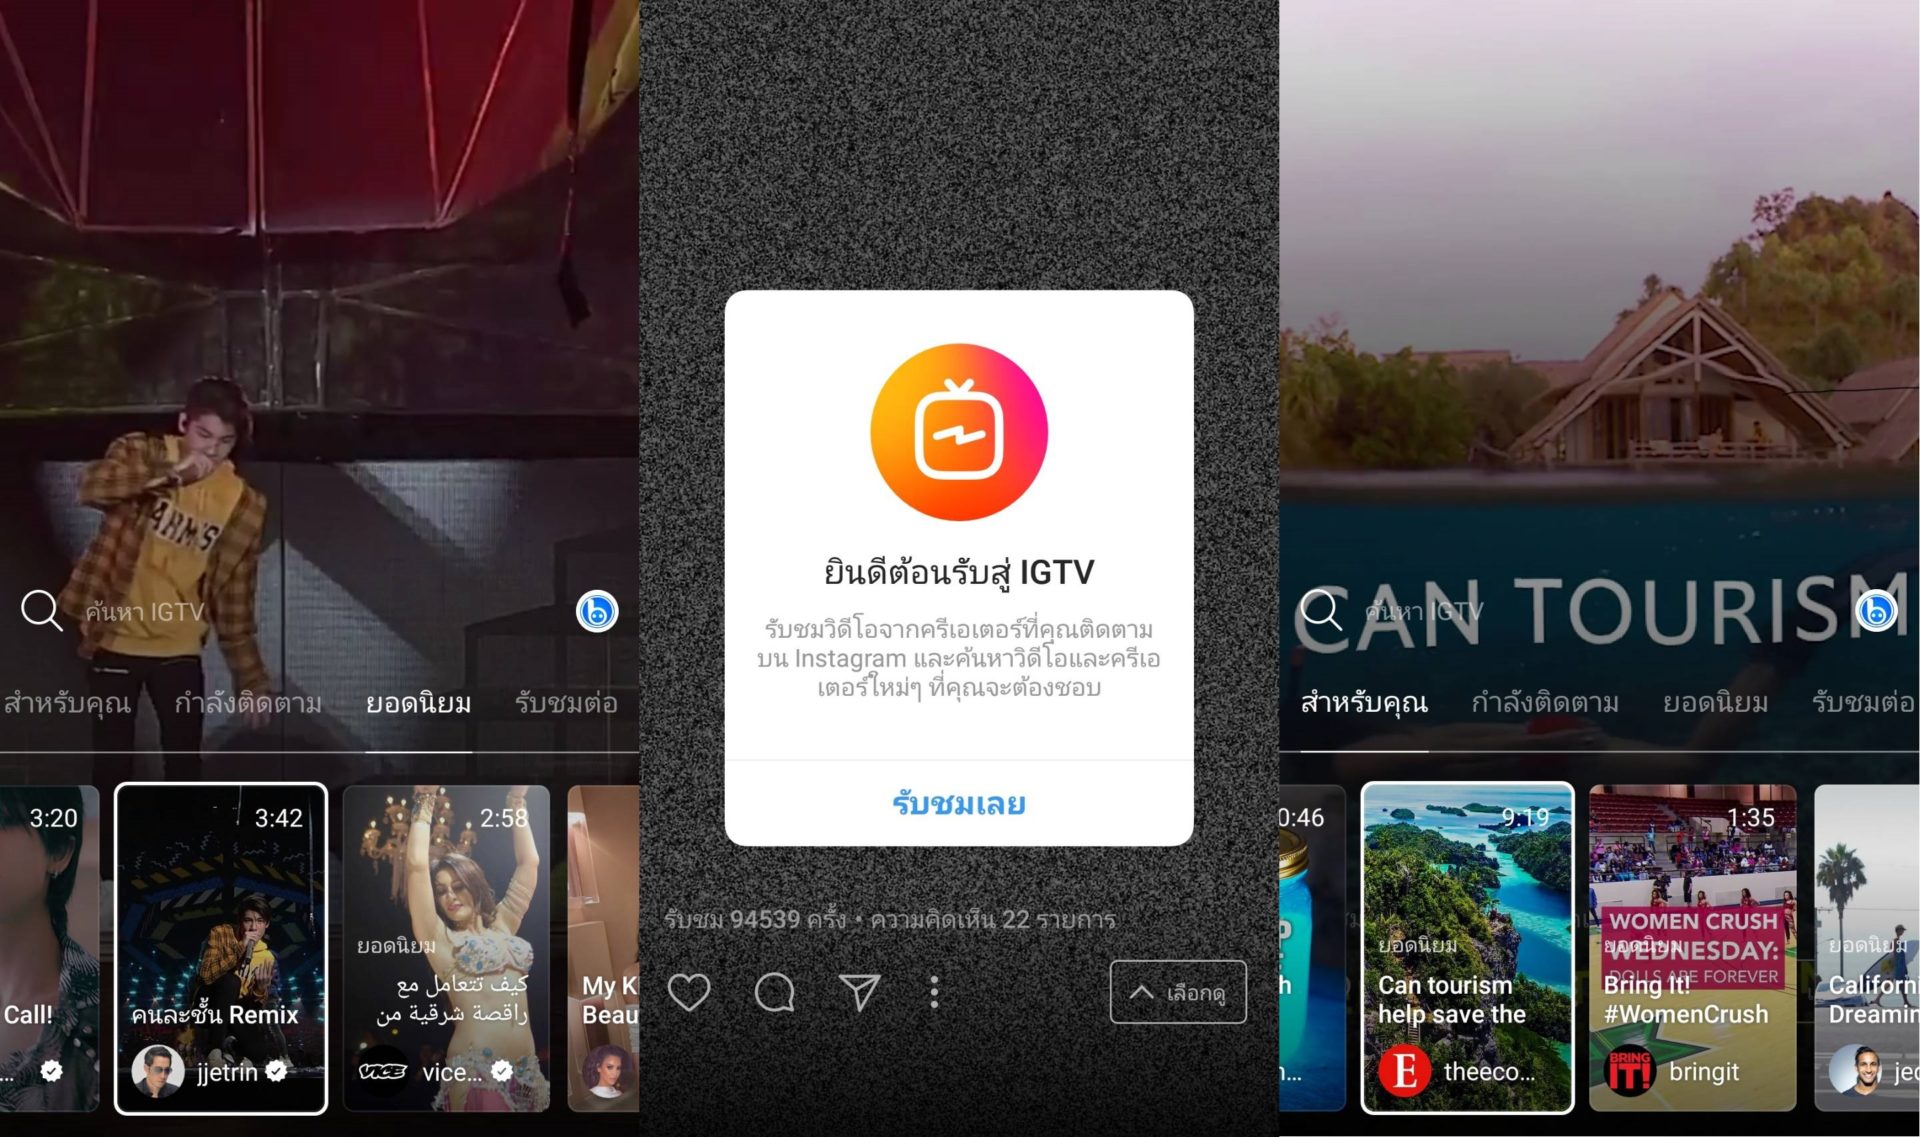 Instagram เผยฟีเจอร์ใหม่ IGTV ลุยตลาดวีดิโอไวรัล “แนวตั้ง” เต็มตัว พร้อมวิธีอัปโหลดแบบง่าย